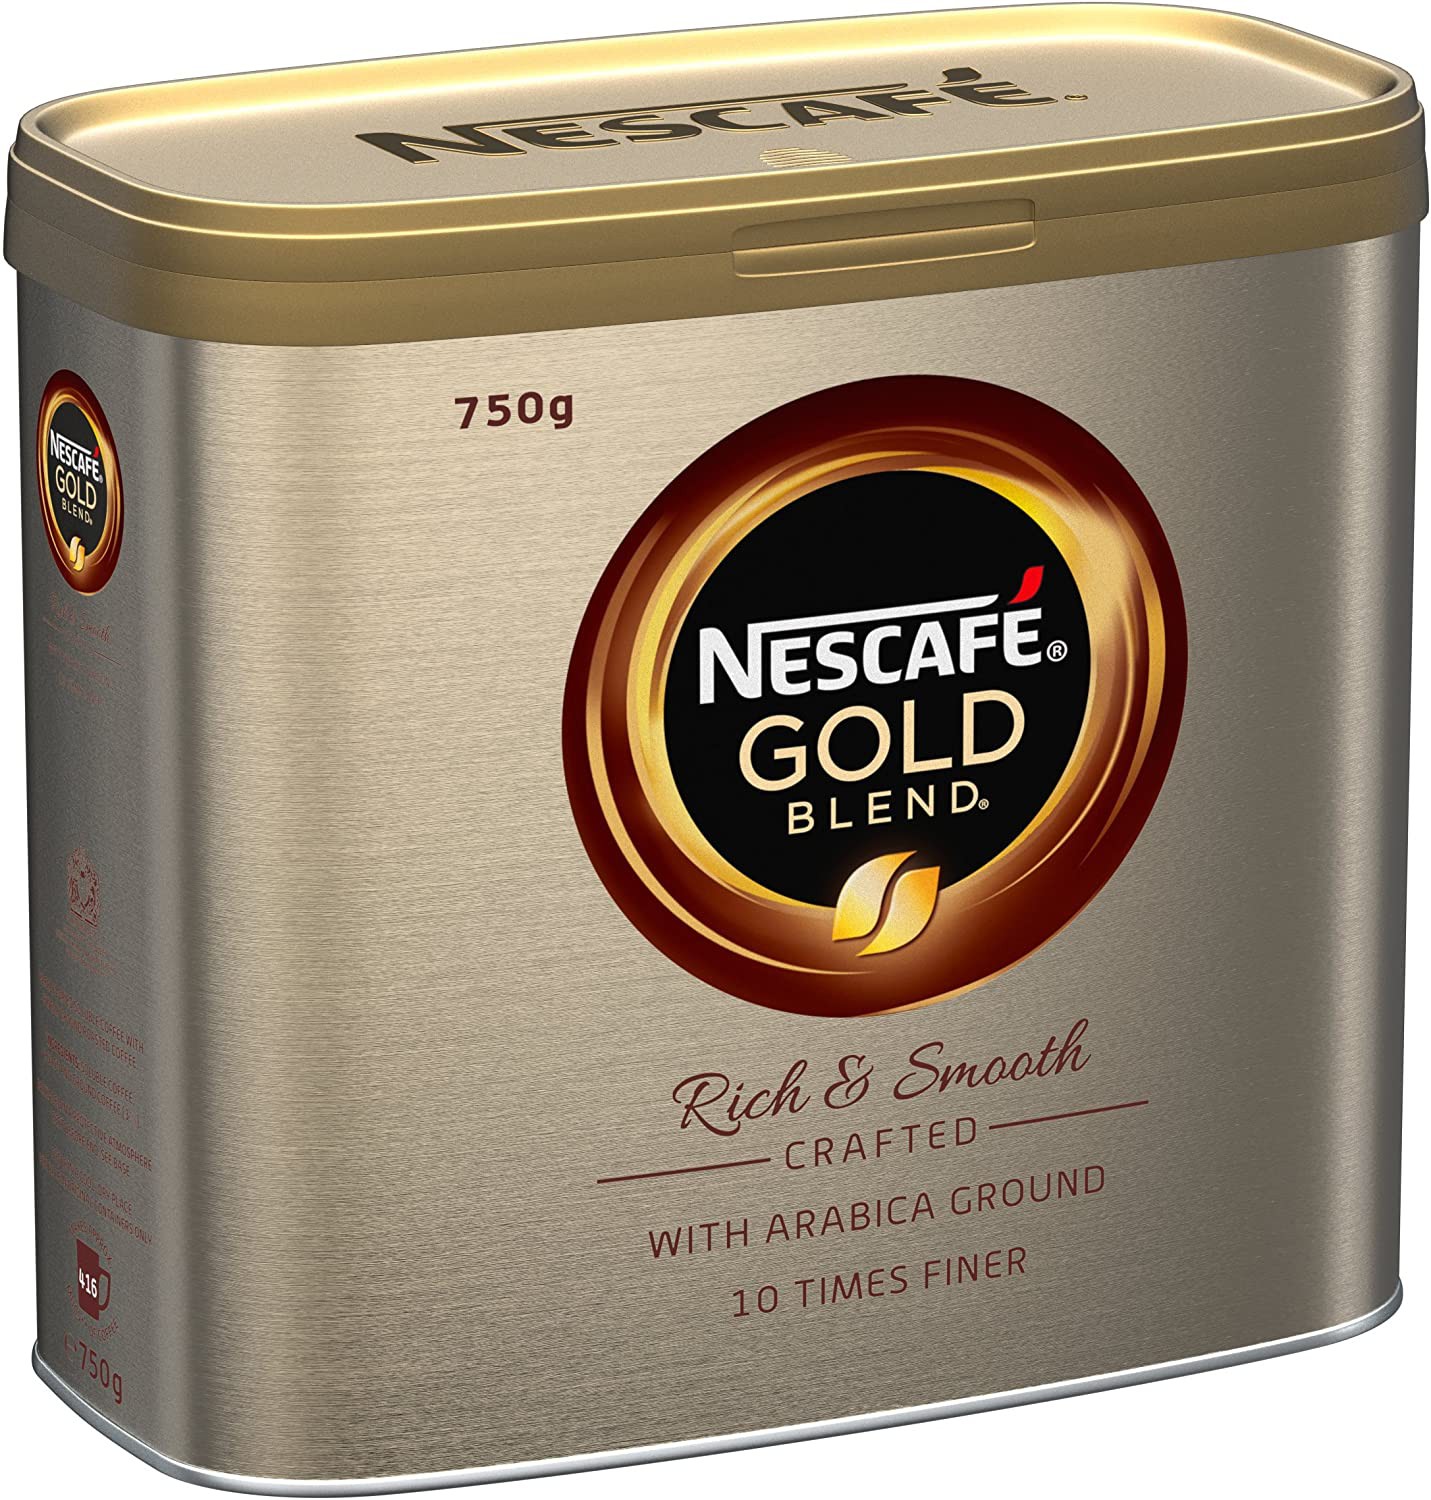 Nescafe+Gold+Blend+Coffee+750g